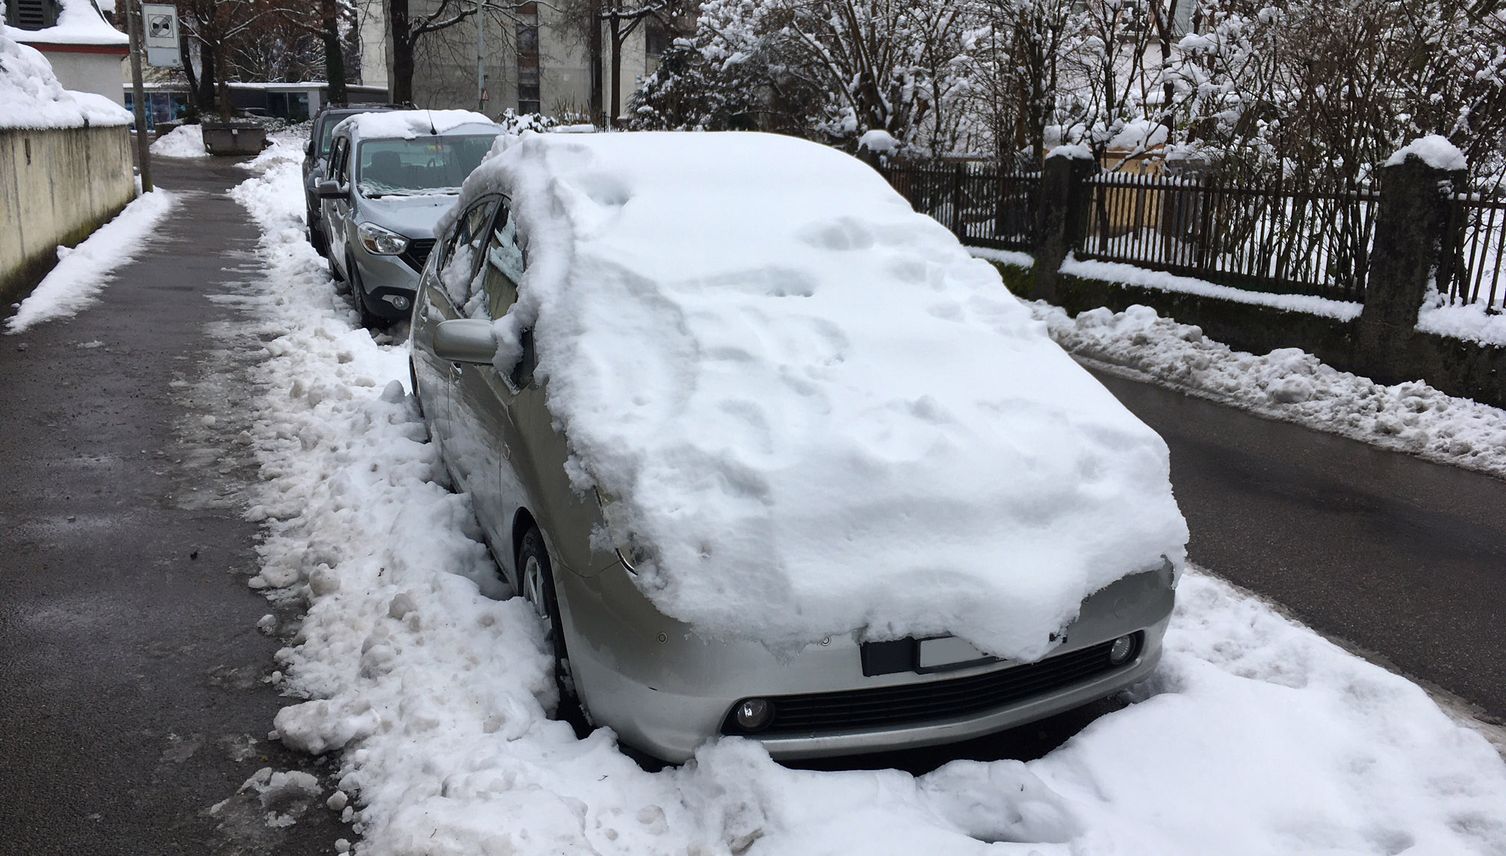 Welche Autos verstecken sich hier im Schnee?